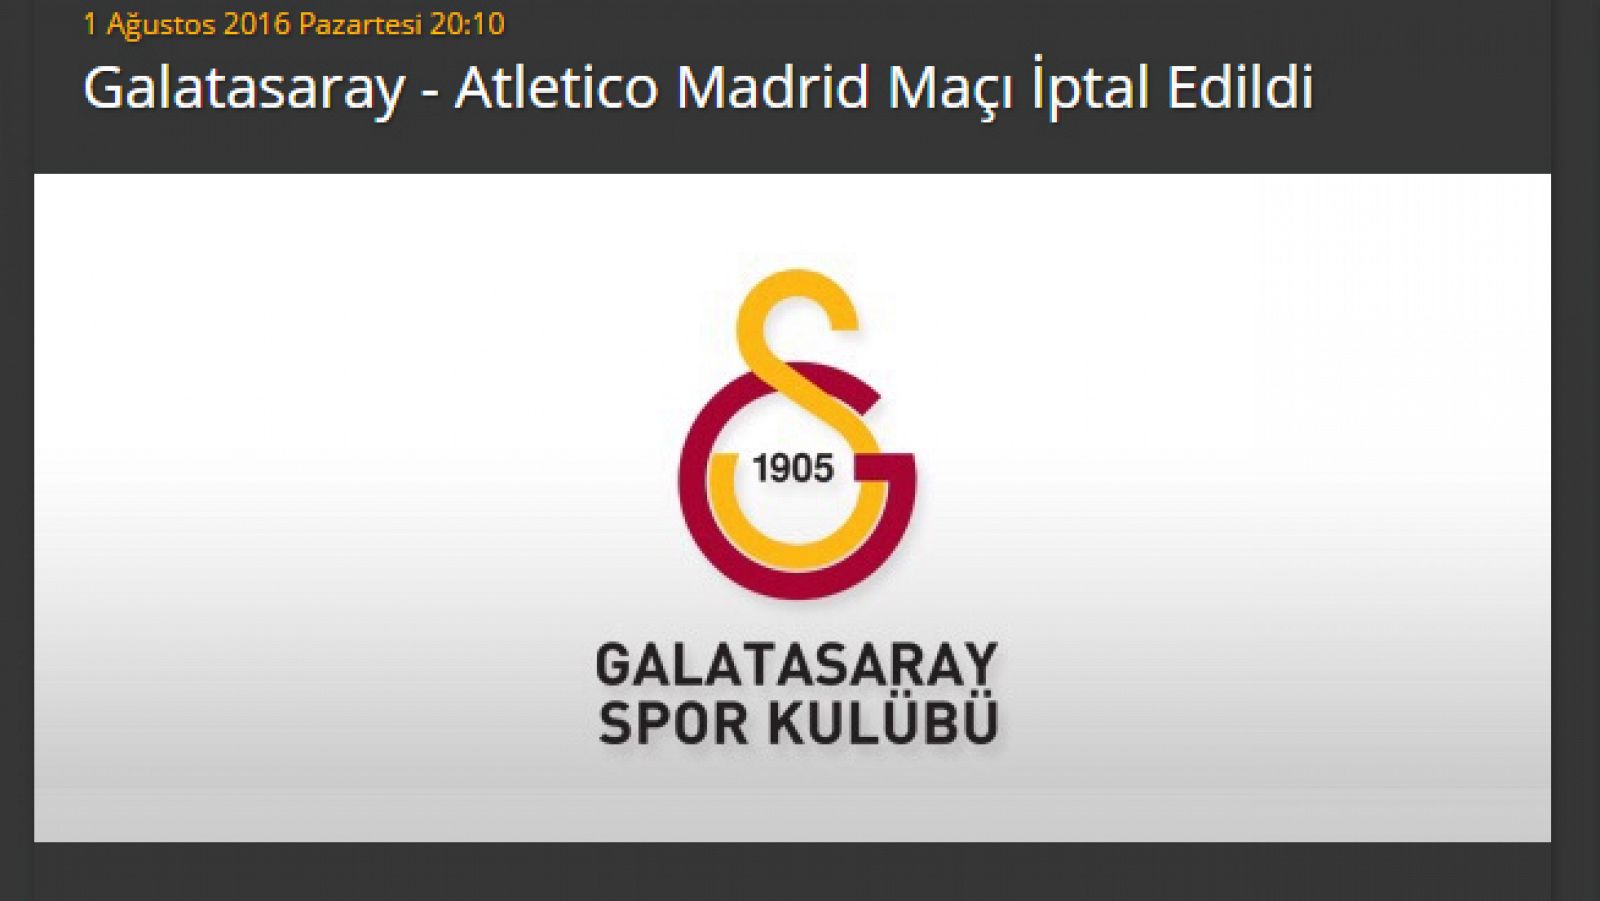 Comunicado del Galatasaray en su web